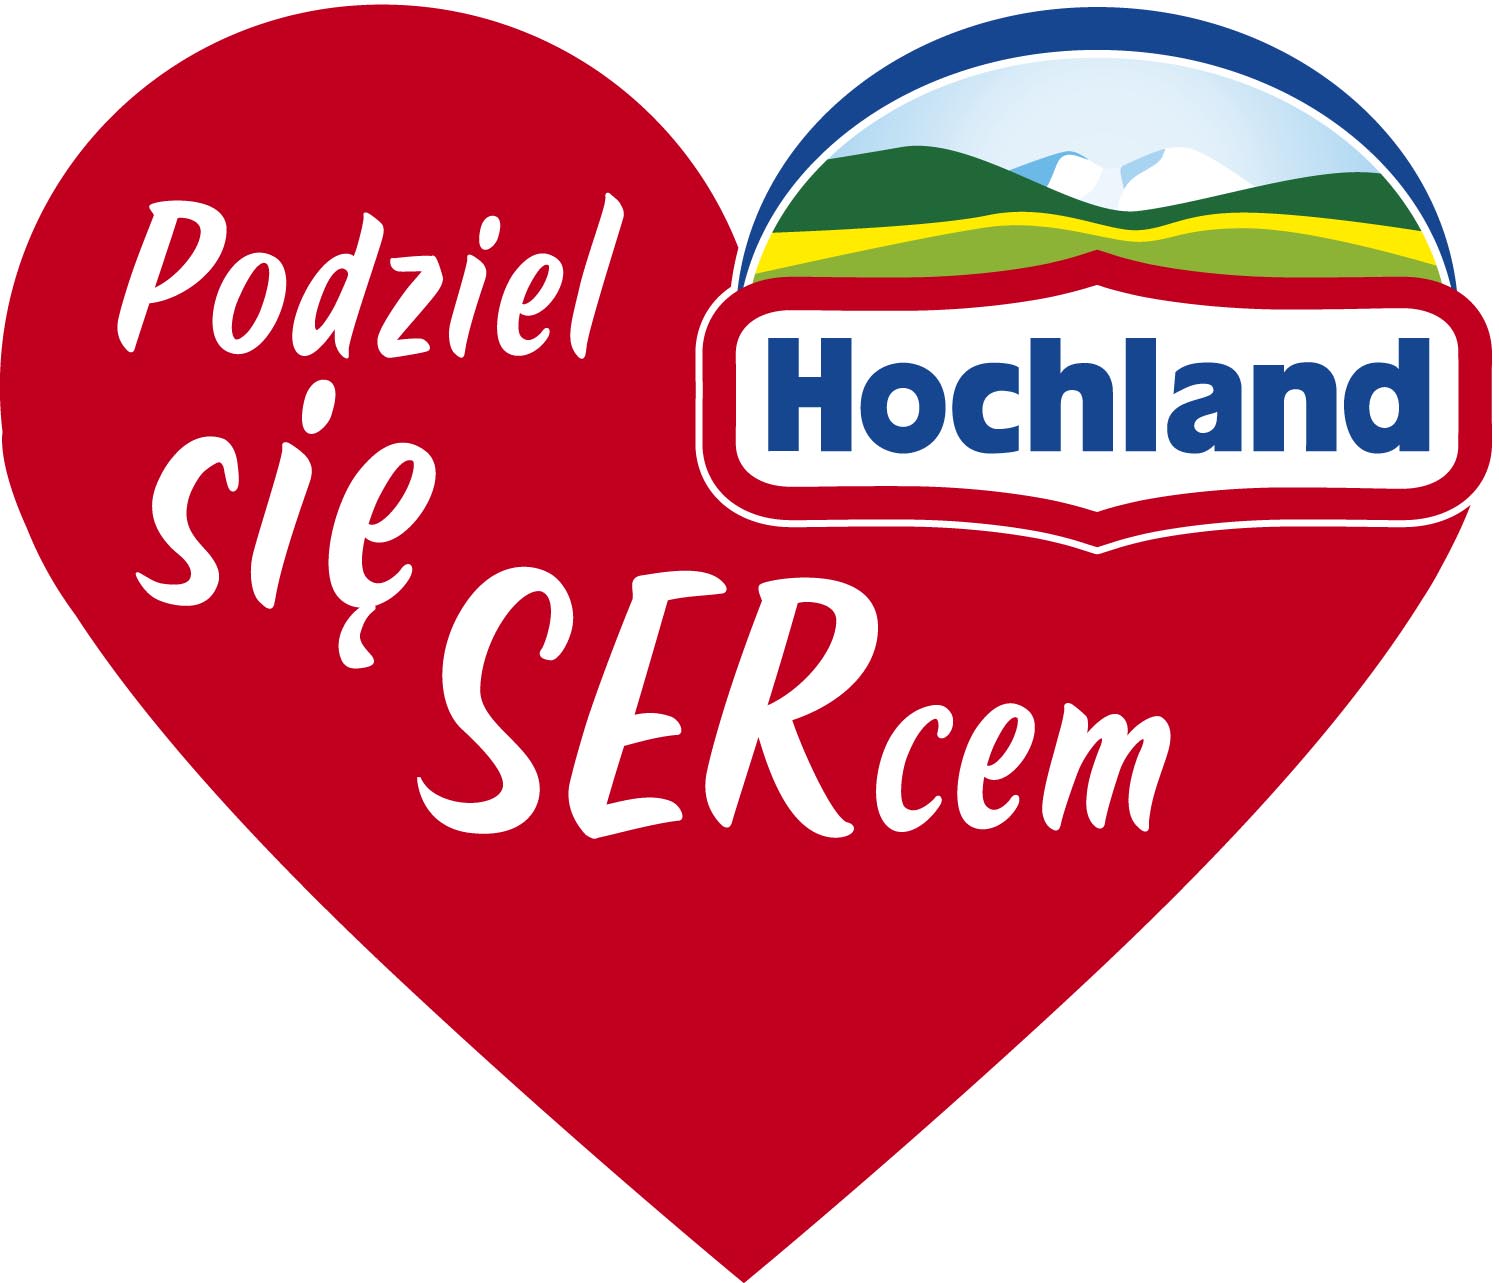 Wolontariat w Hochland pod hasłem „Podziel się SERcem”